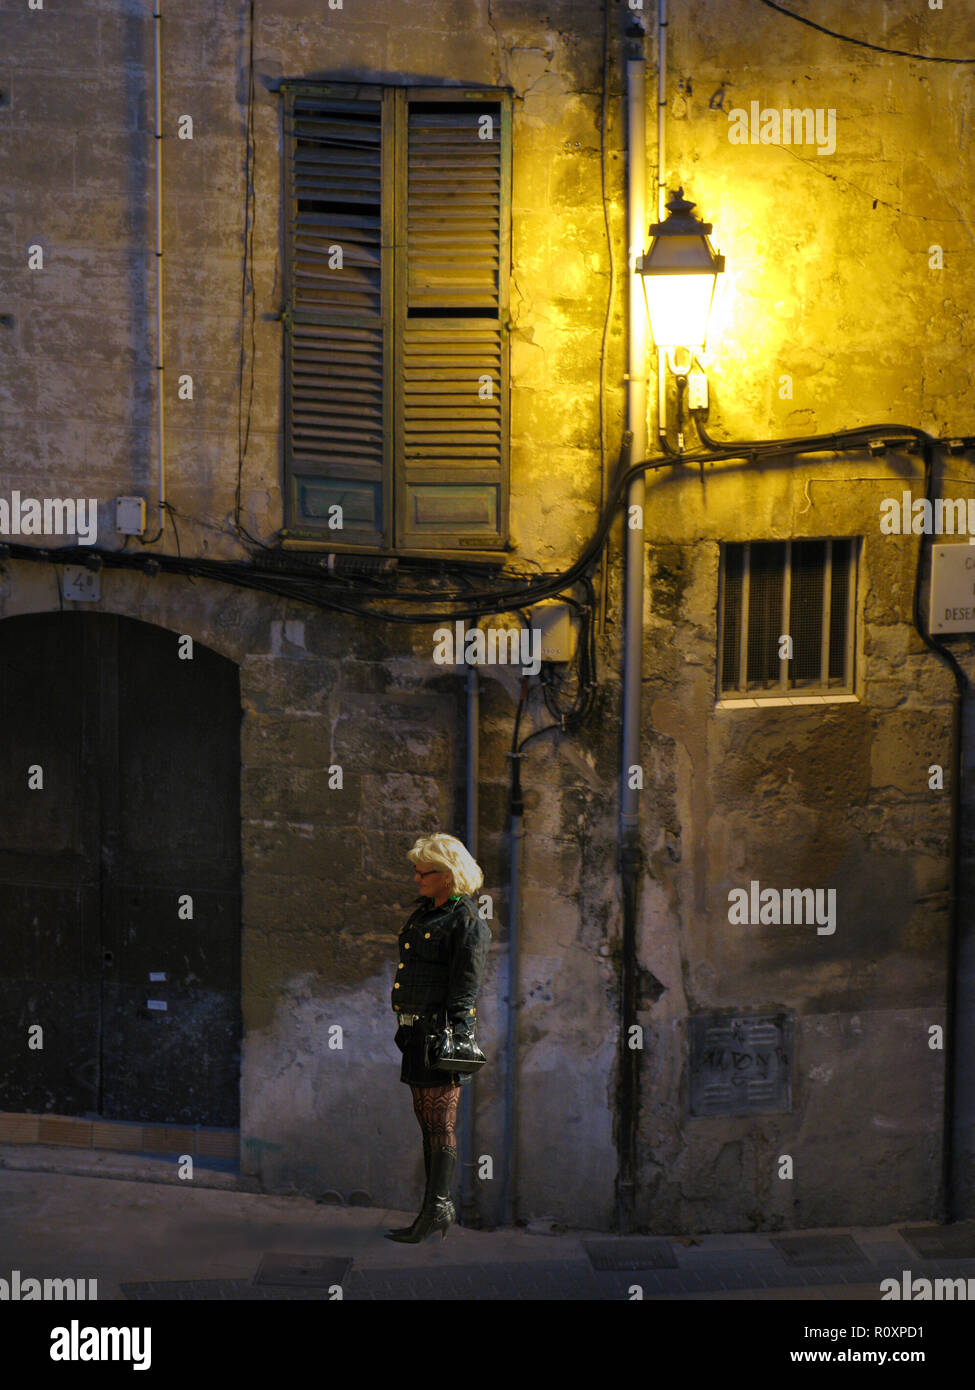 Une femme blonde en bottes, bas et jupe courte attend dans un coin de rue sous une lumière de rue et de vieux volets dans le quartier Avenidas de Palma, Majorque, Espagne Banque D'Images